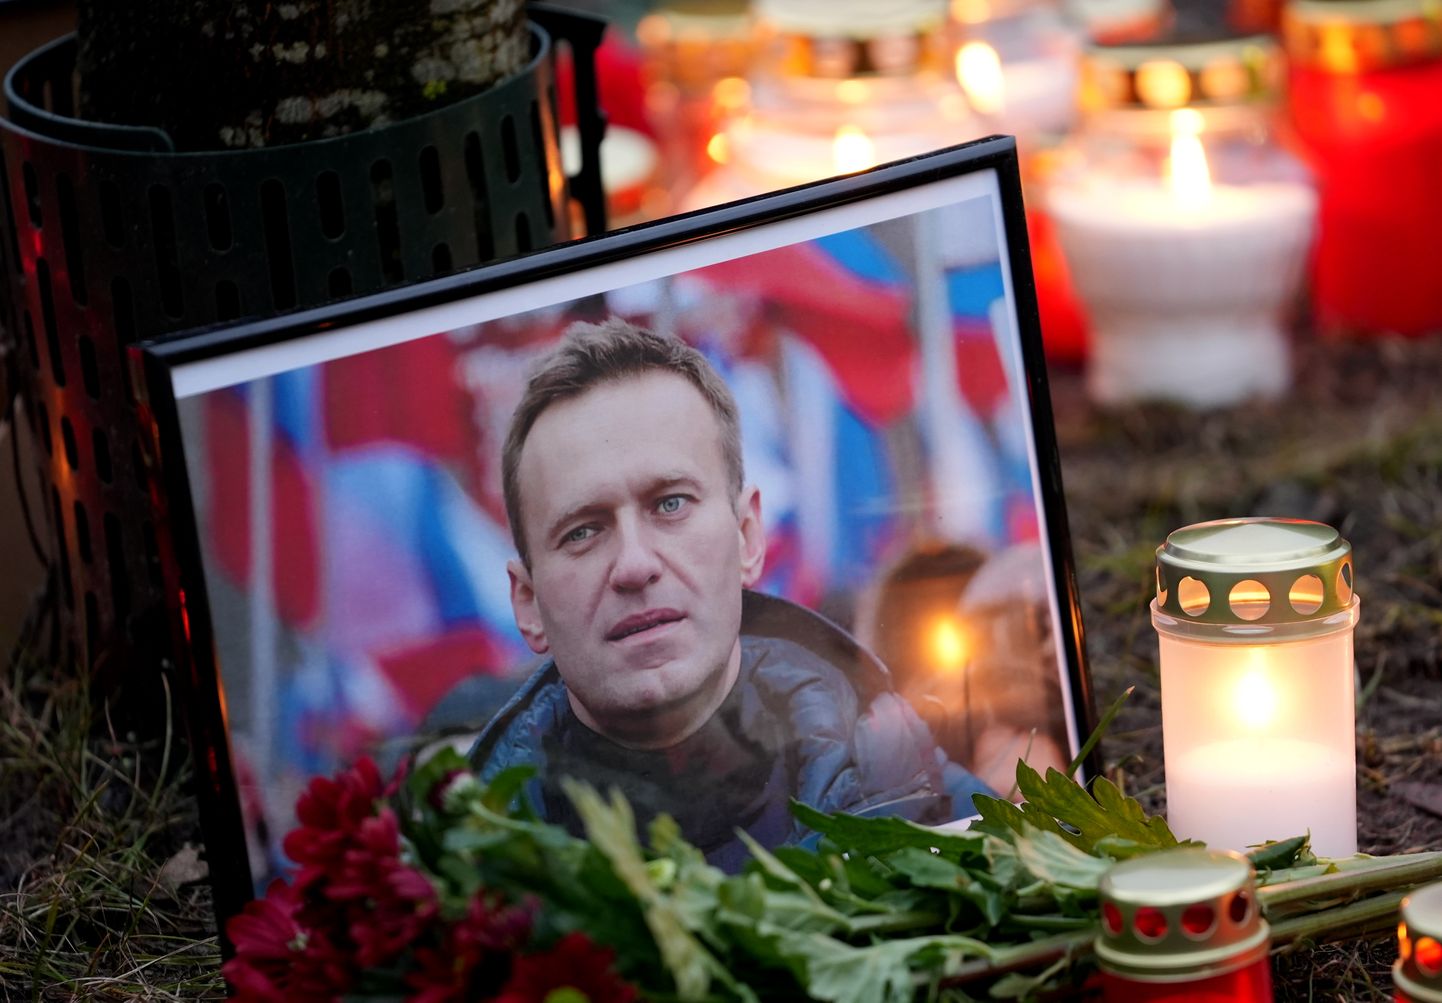 Pieminot Krievijas opozīcijas līdera Alekseja Navaļnija nāvi, iepretim Krievijas vēstniecībai norisinās veltīts piemiņas pasākums.